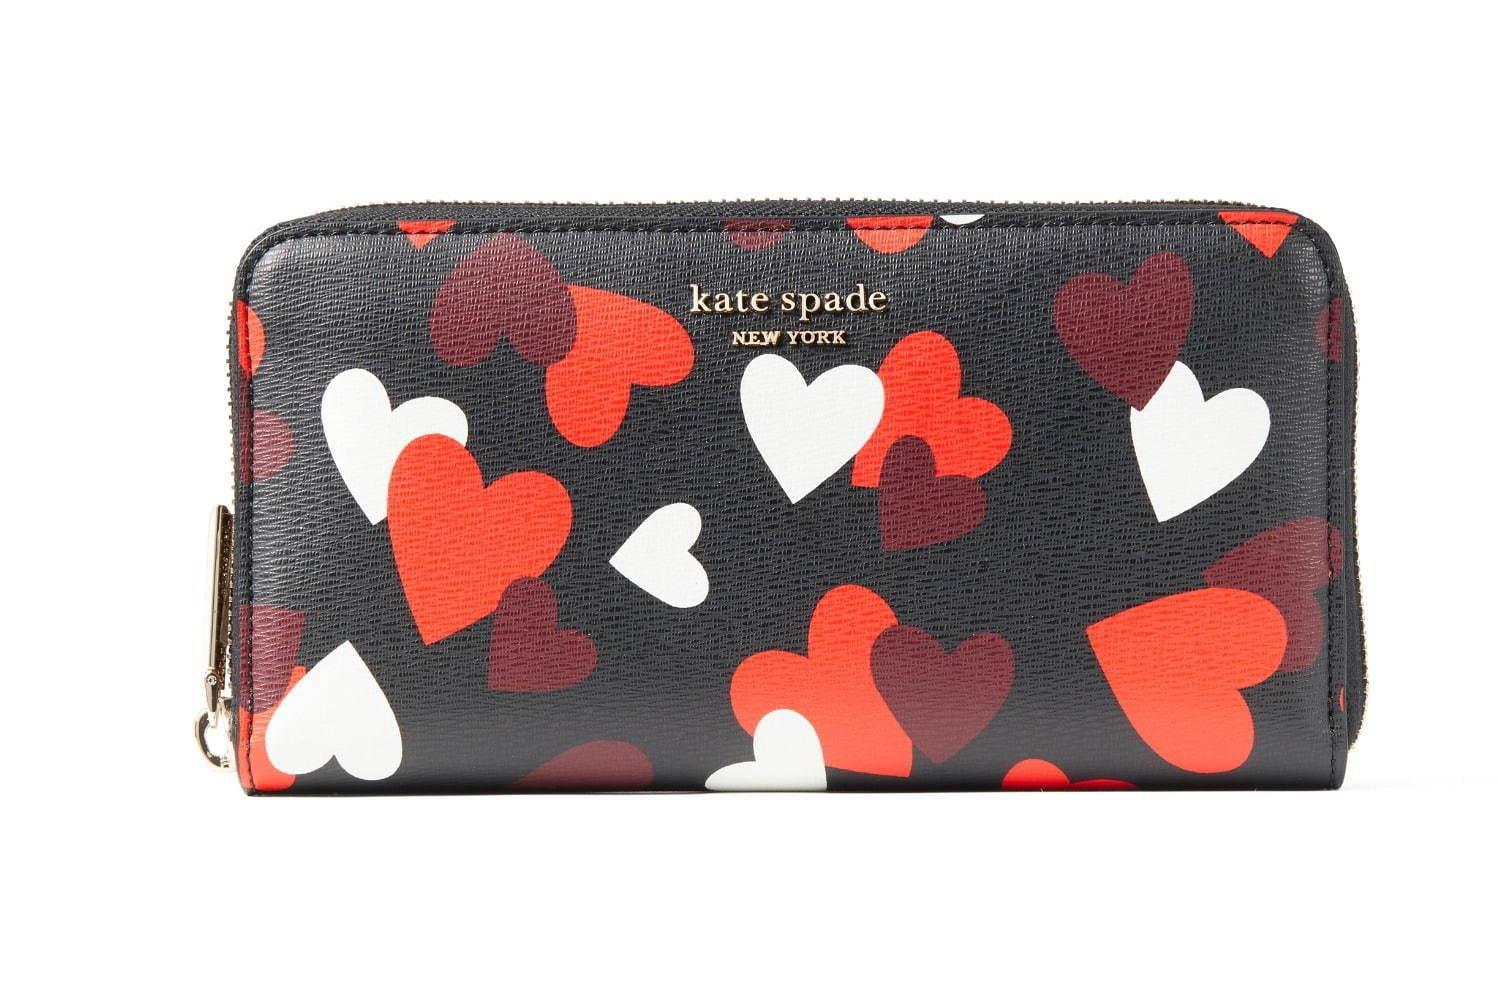 ケイト・スペード2021年バレンタインギフト、“ハート”モチーフの財布&3Dコインパース コピー